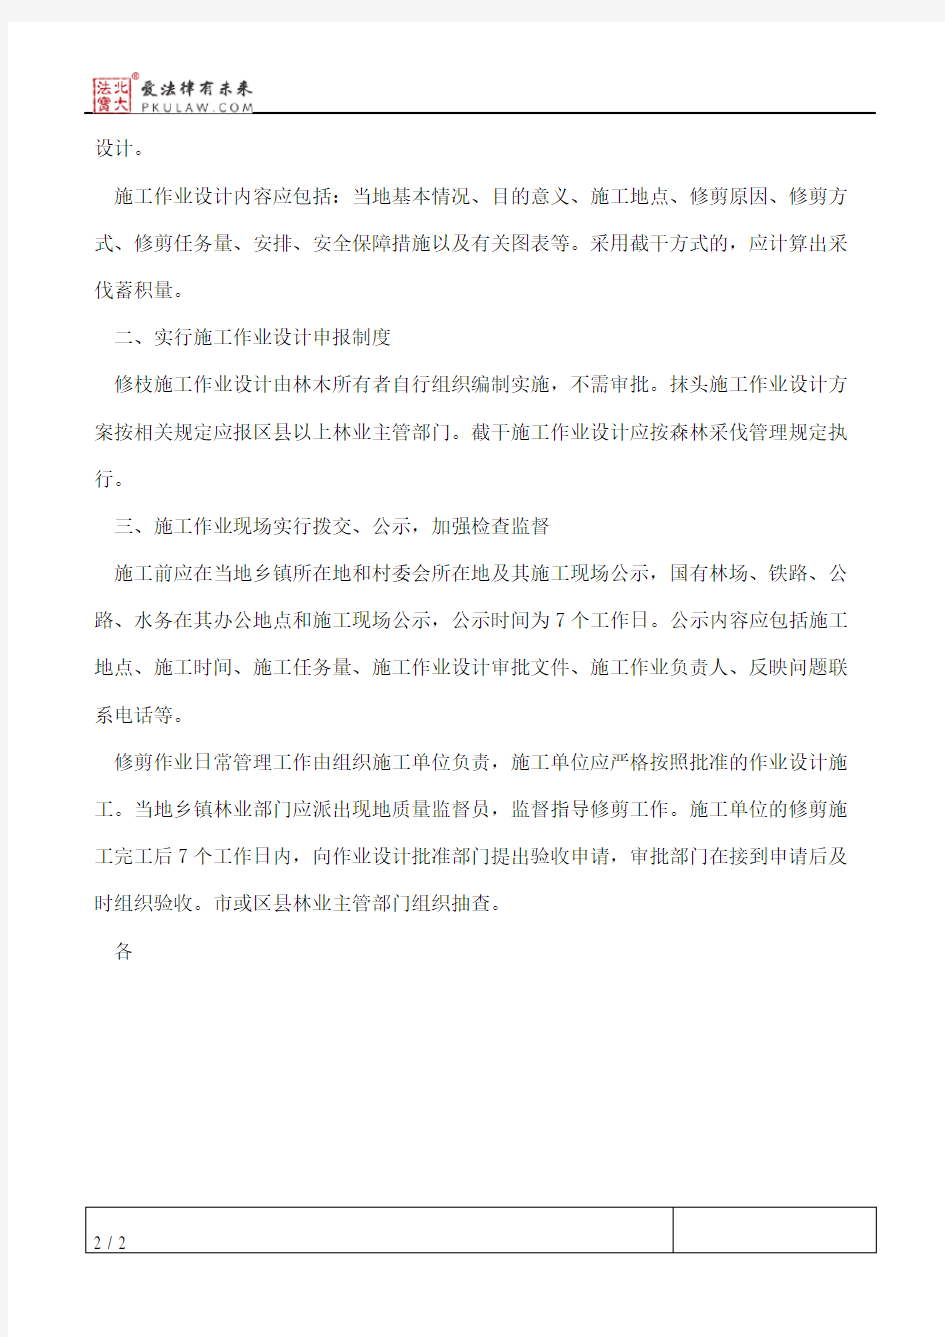 北京市园林绿化局关于印发《北京市林木修剪技术规定》(试行)的通知